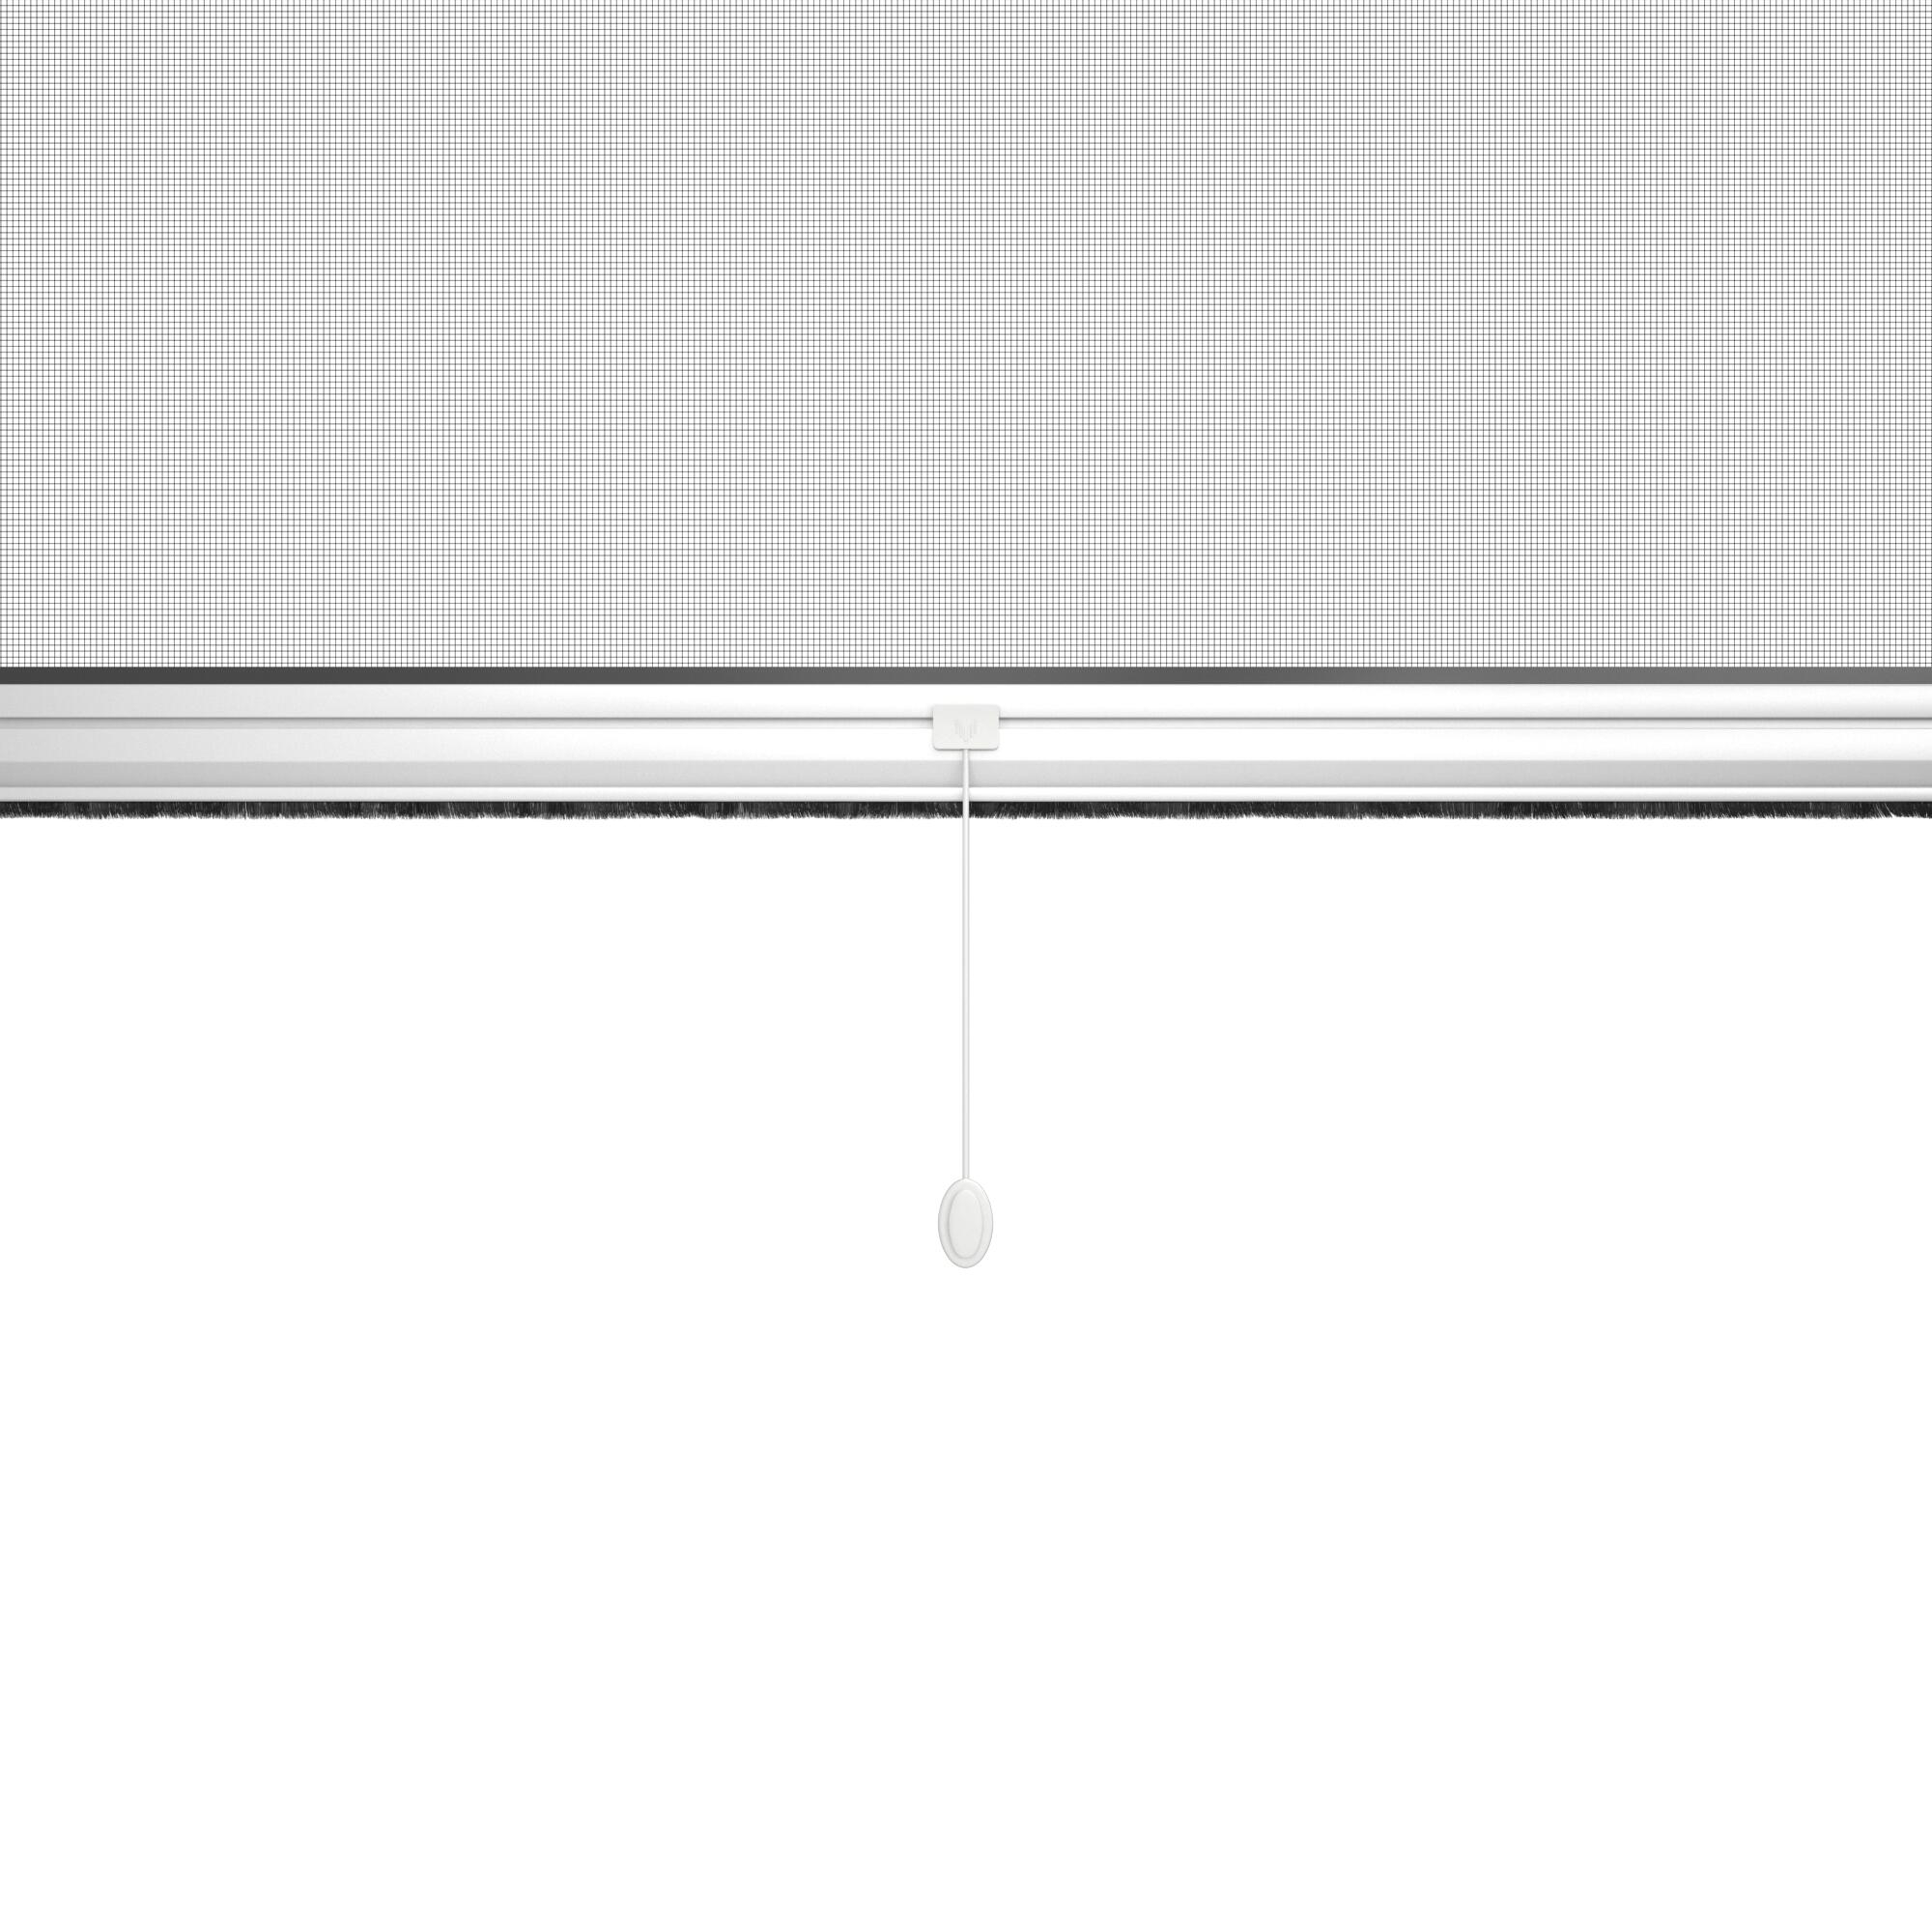 Zanzariera avvolgibile ARTENS per finestra L 100 x H 160 cm bianco - 2